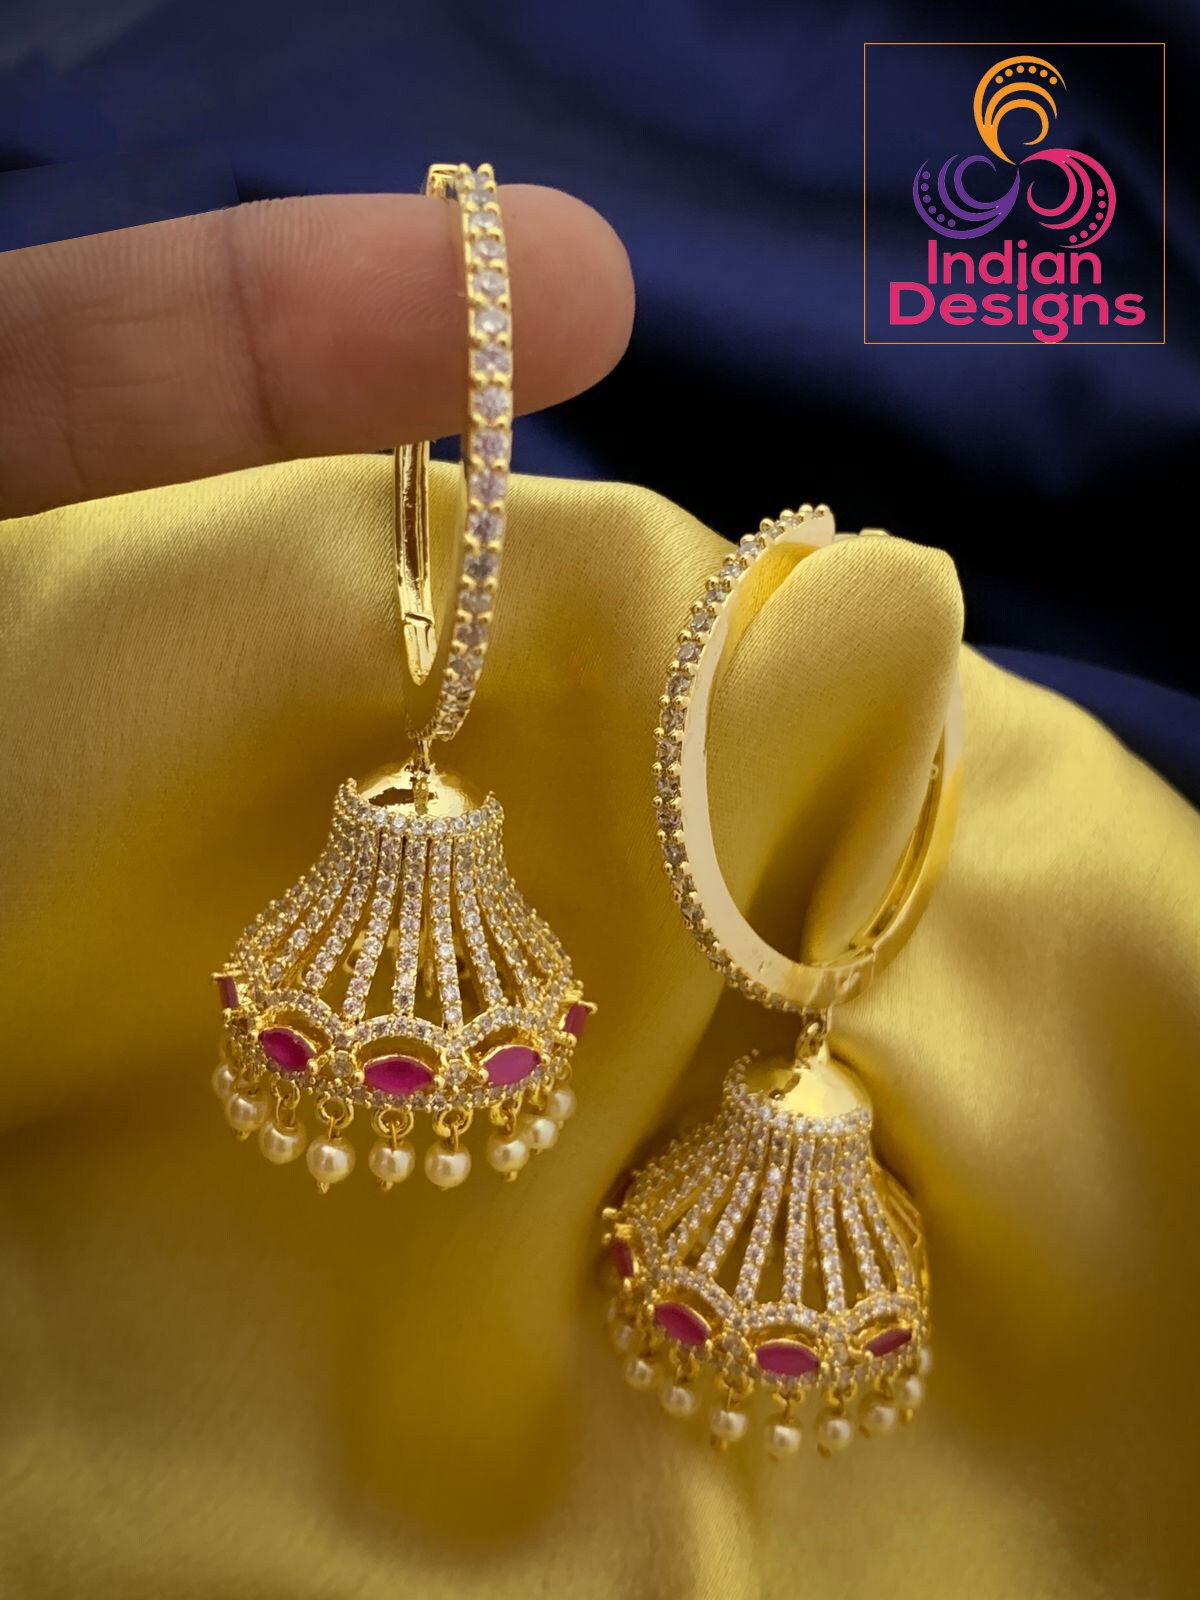 Big Hoop diamond Jhumkas Earrings | Gold hoop earrings with Jhumka | American Diamond Jhumka Jhumki Earrings with Pearl drops